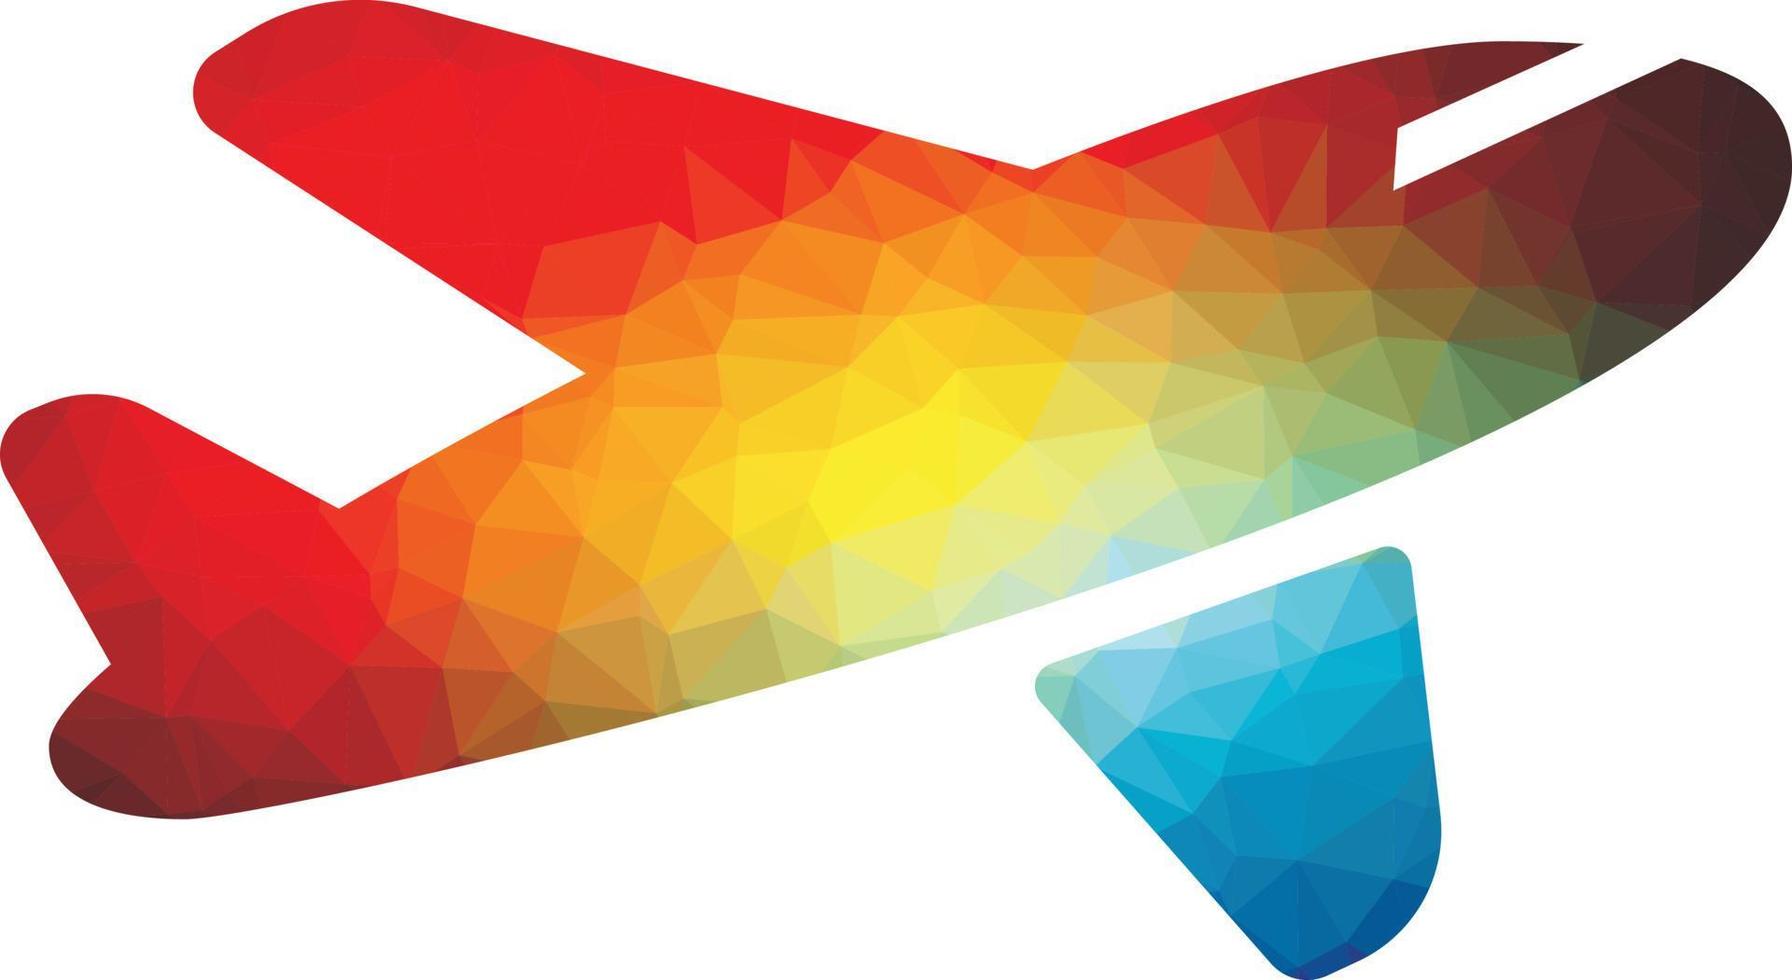 de colores silueta de un avión en el aire vector